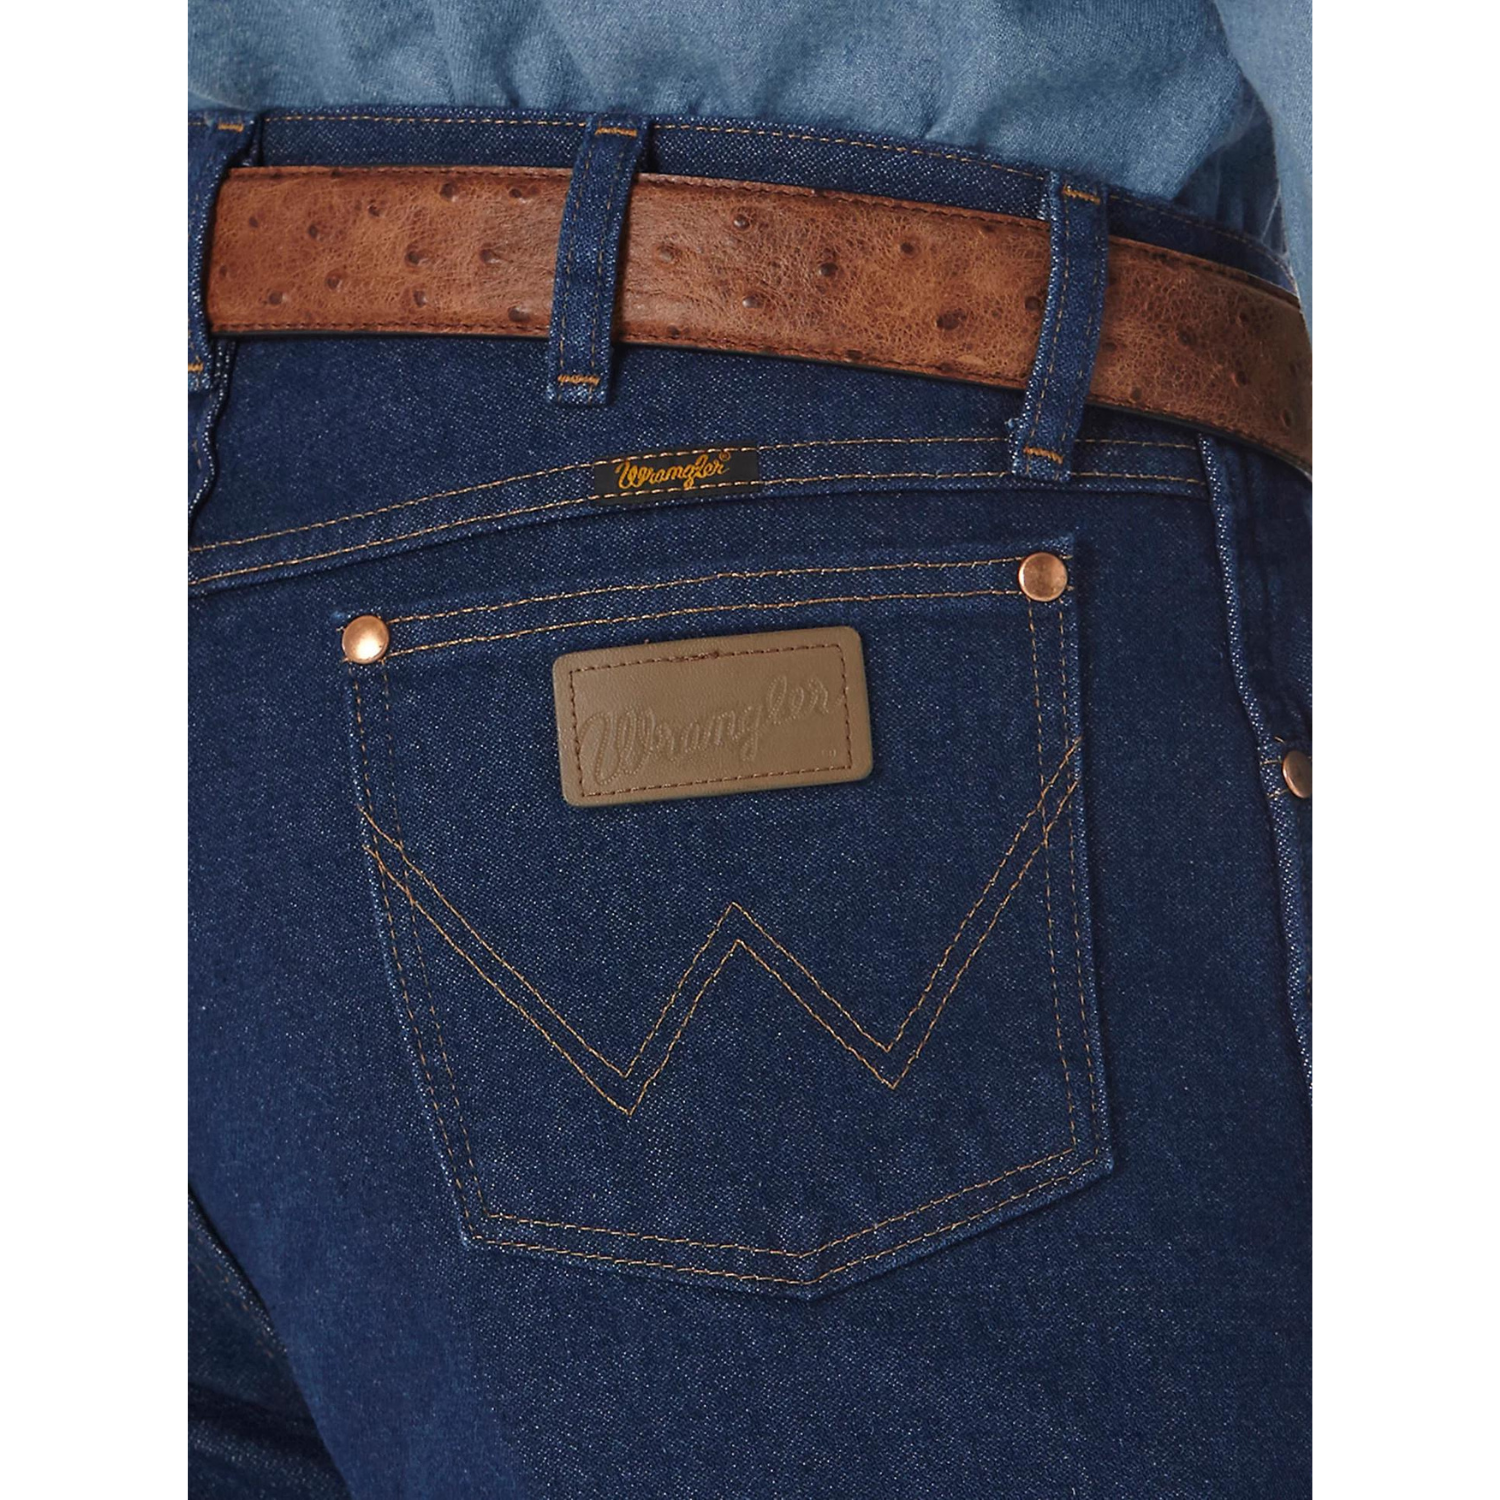 Wrangler Men's Original Cowboy Cut Jeans - Saddleworld Devonport